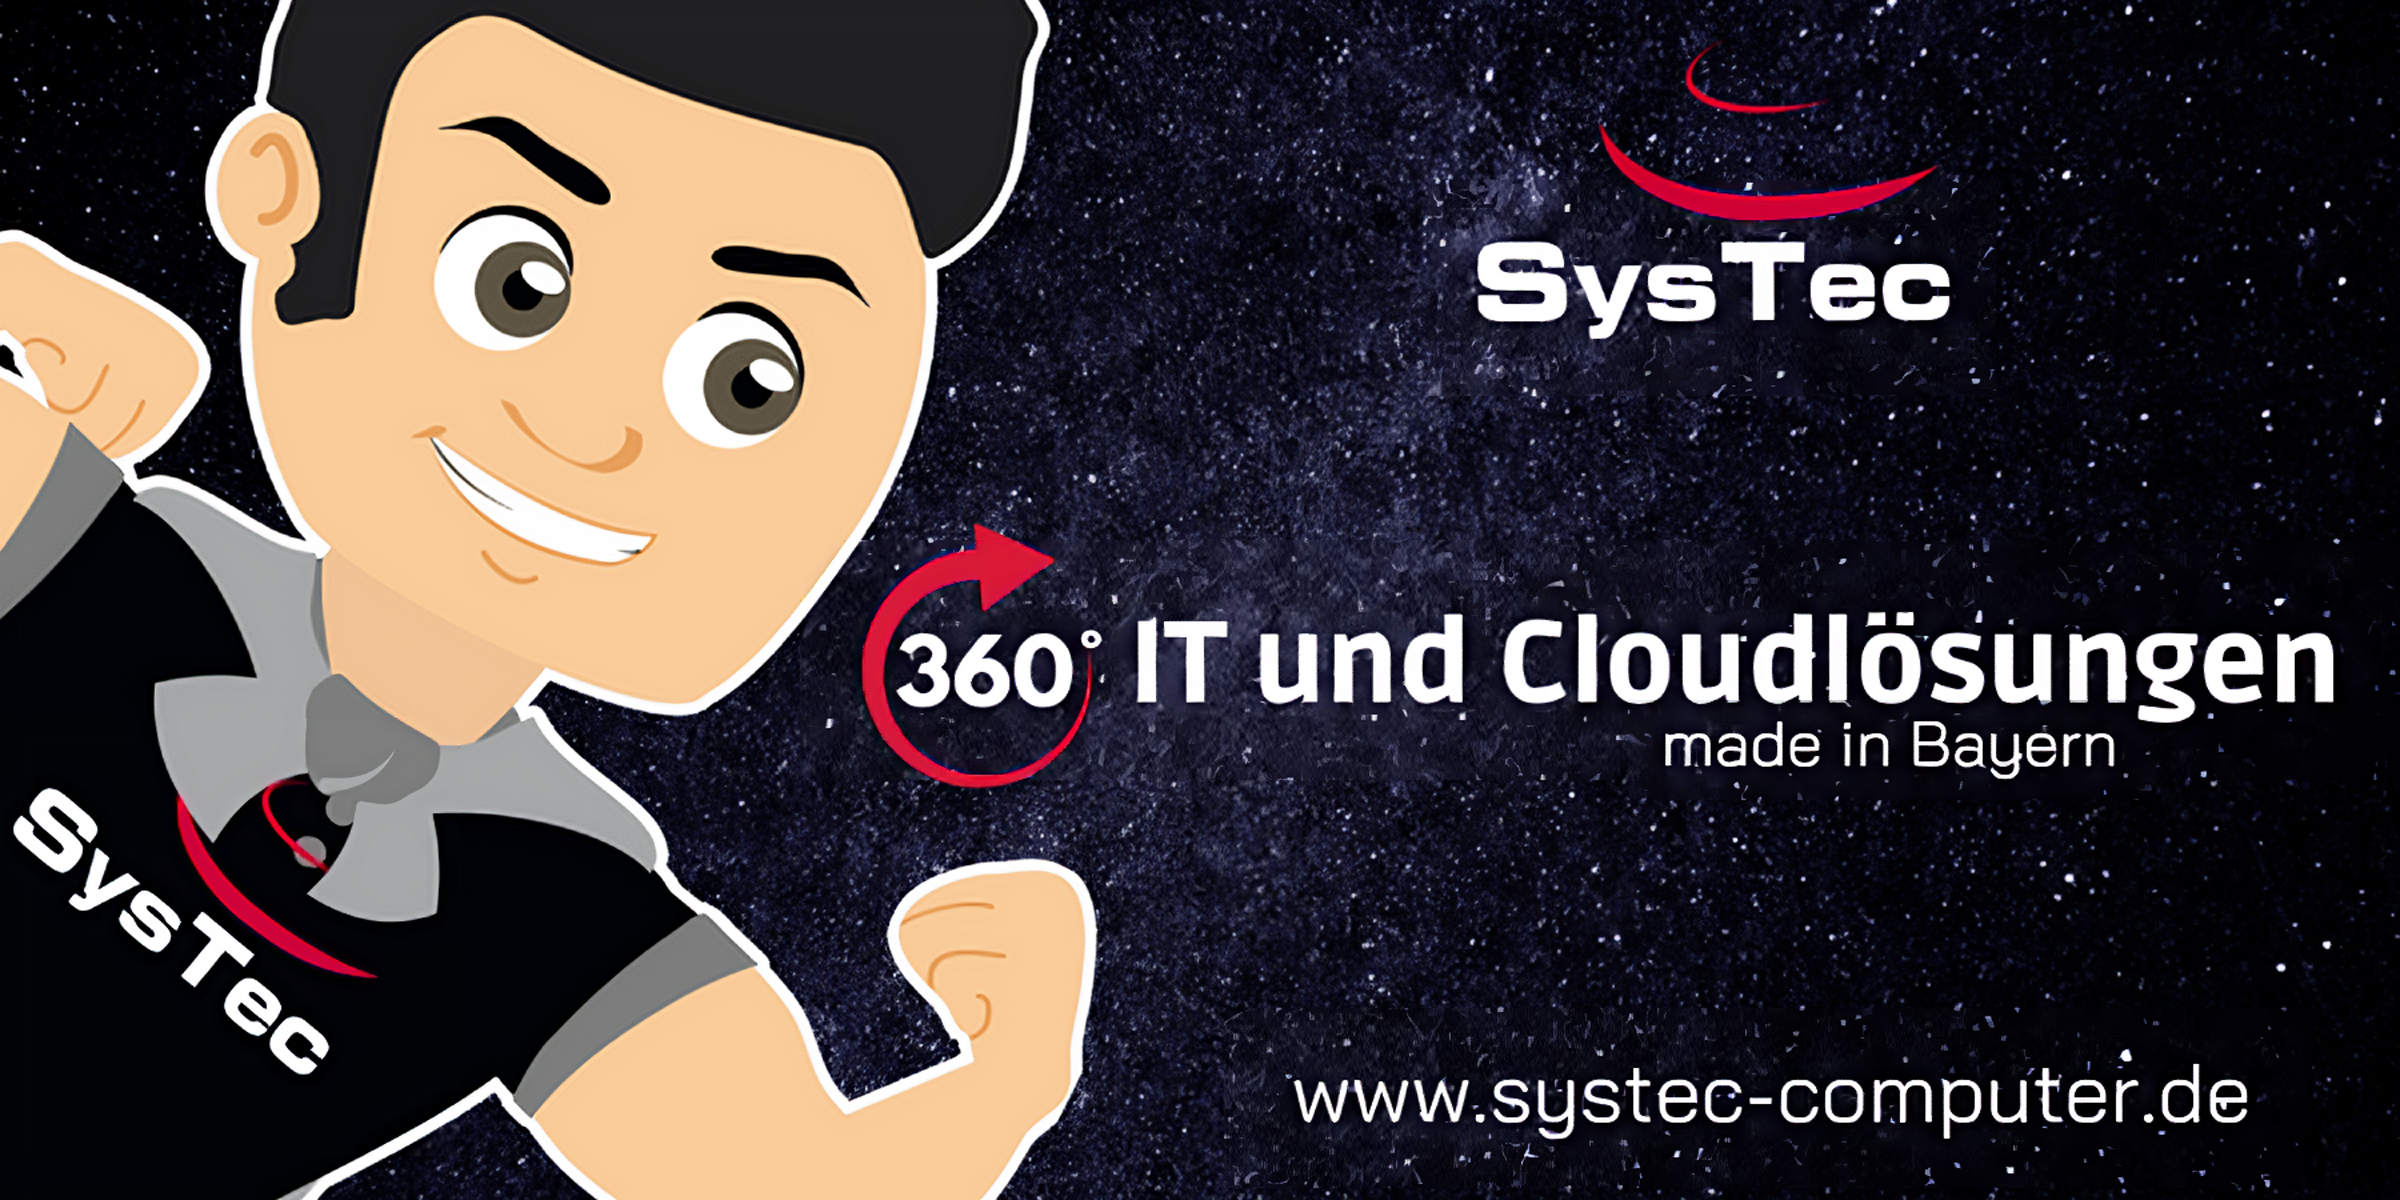 (c) Systec-computer.de